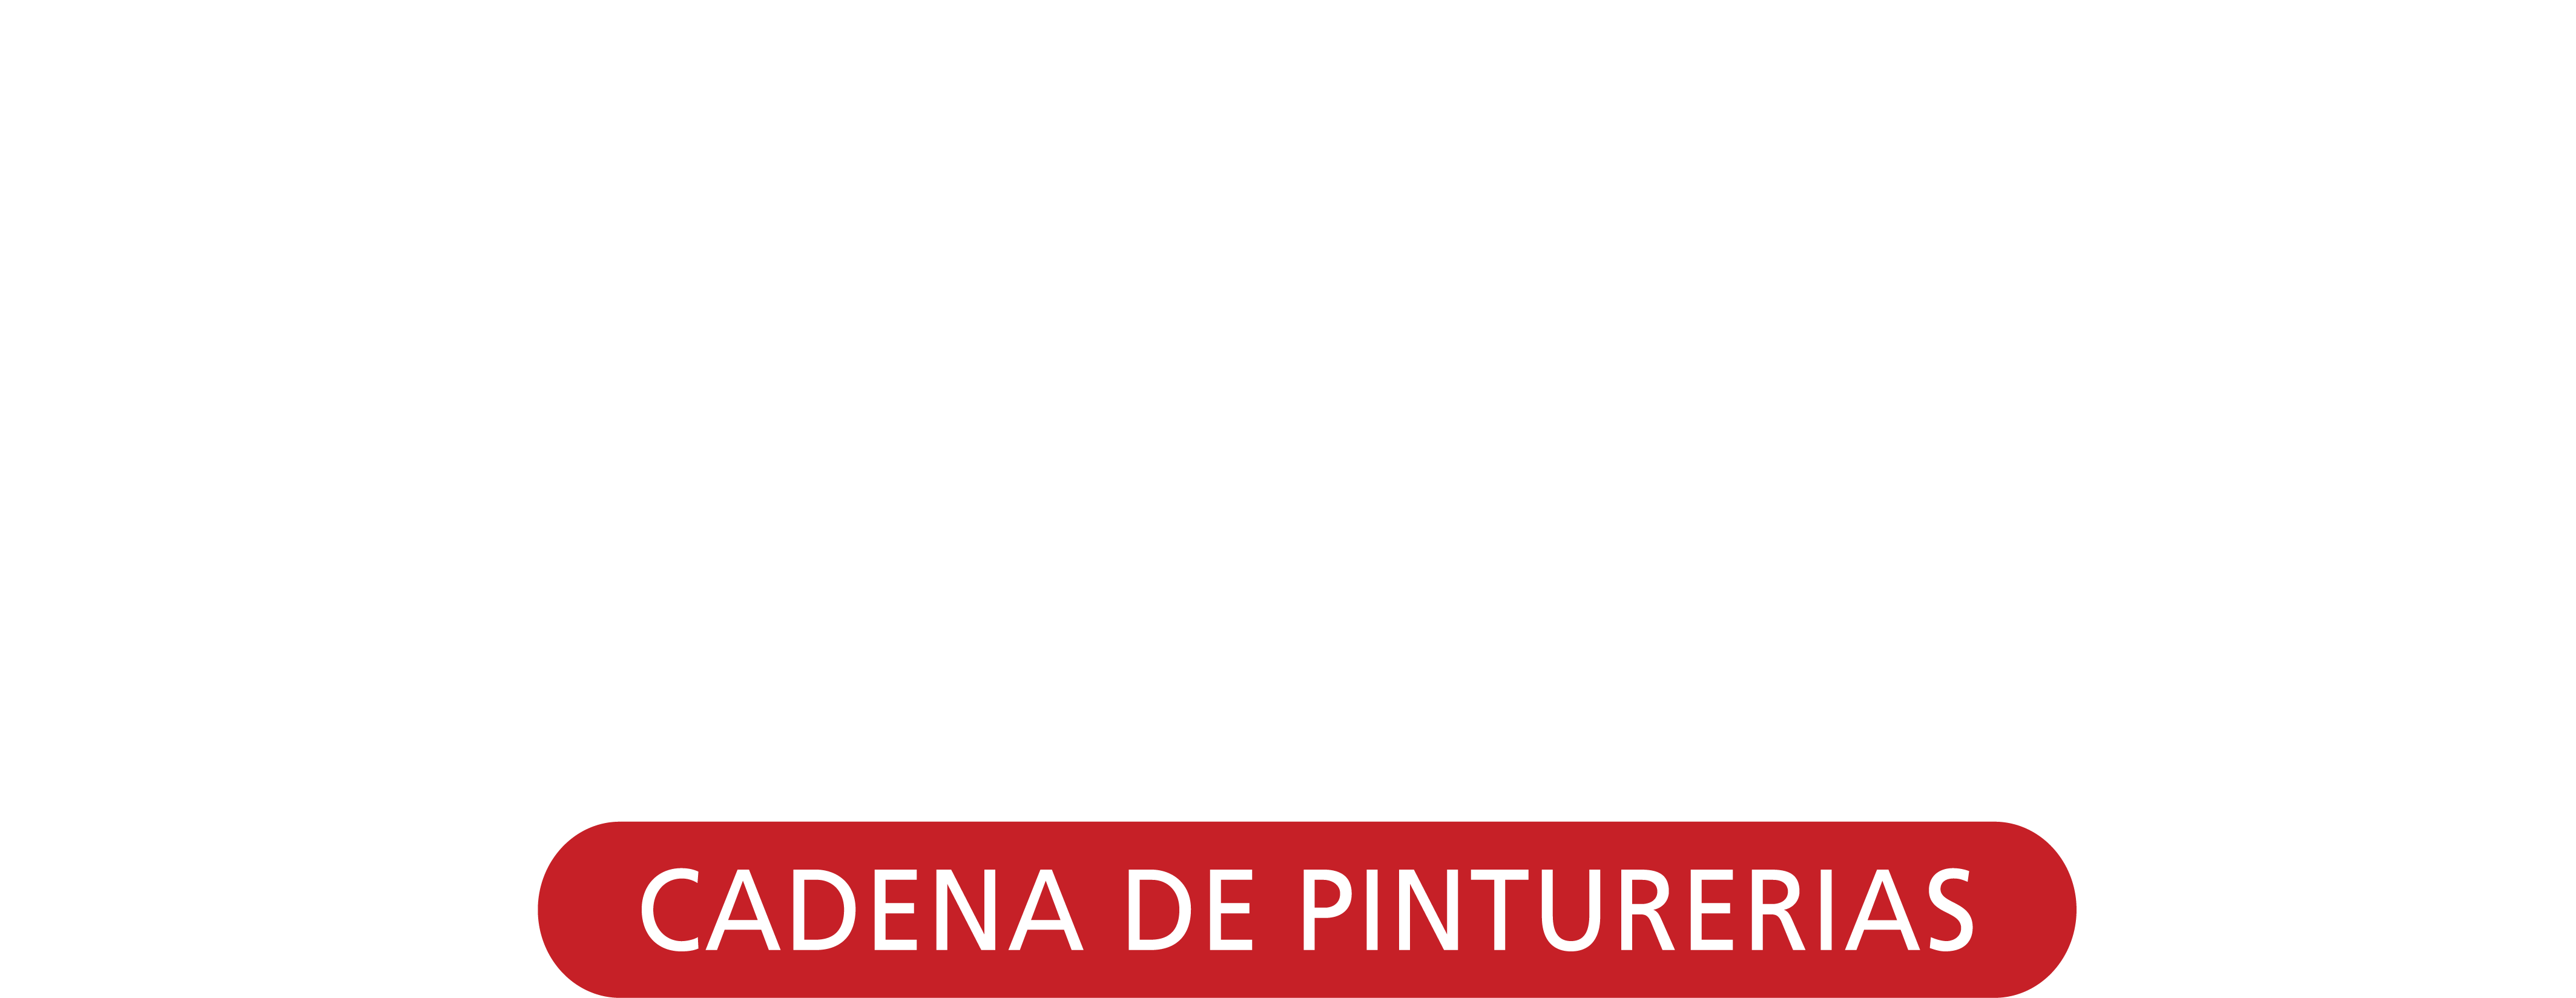 Andres Merino